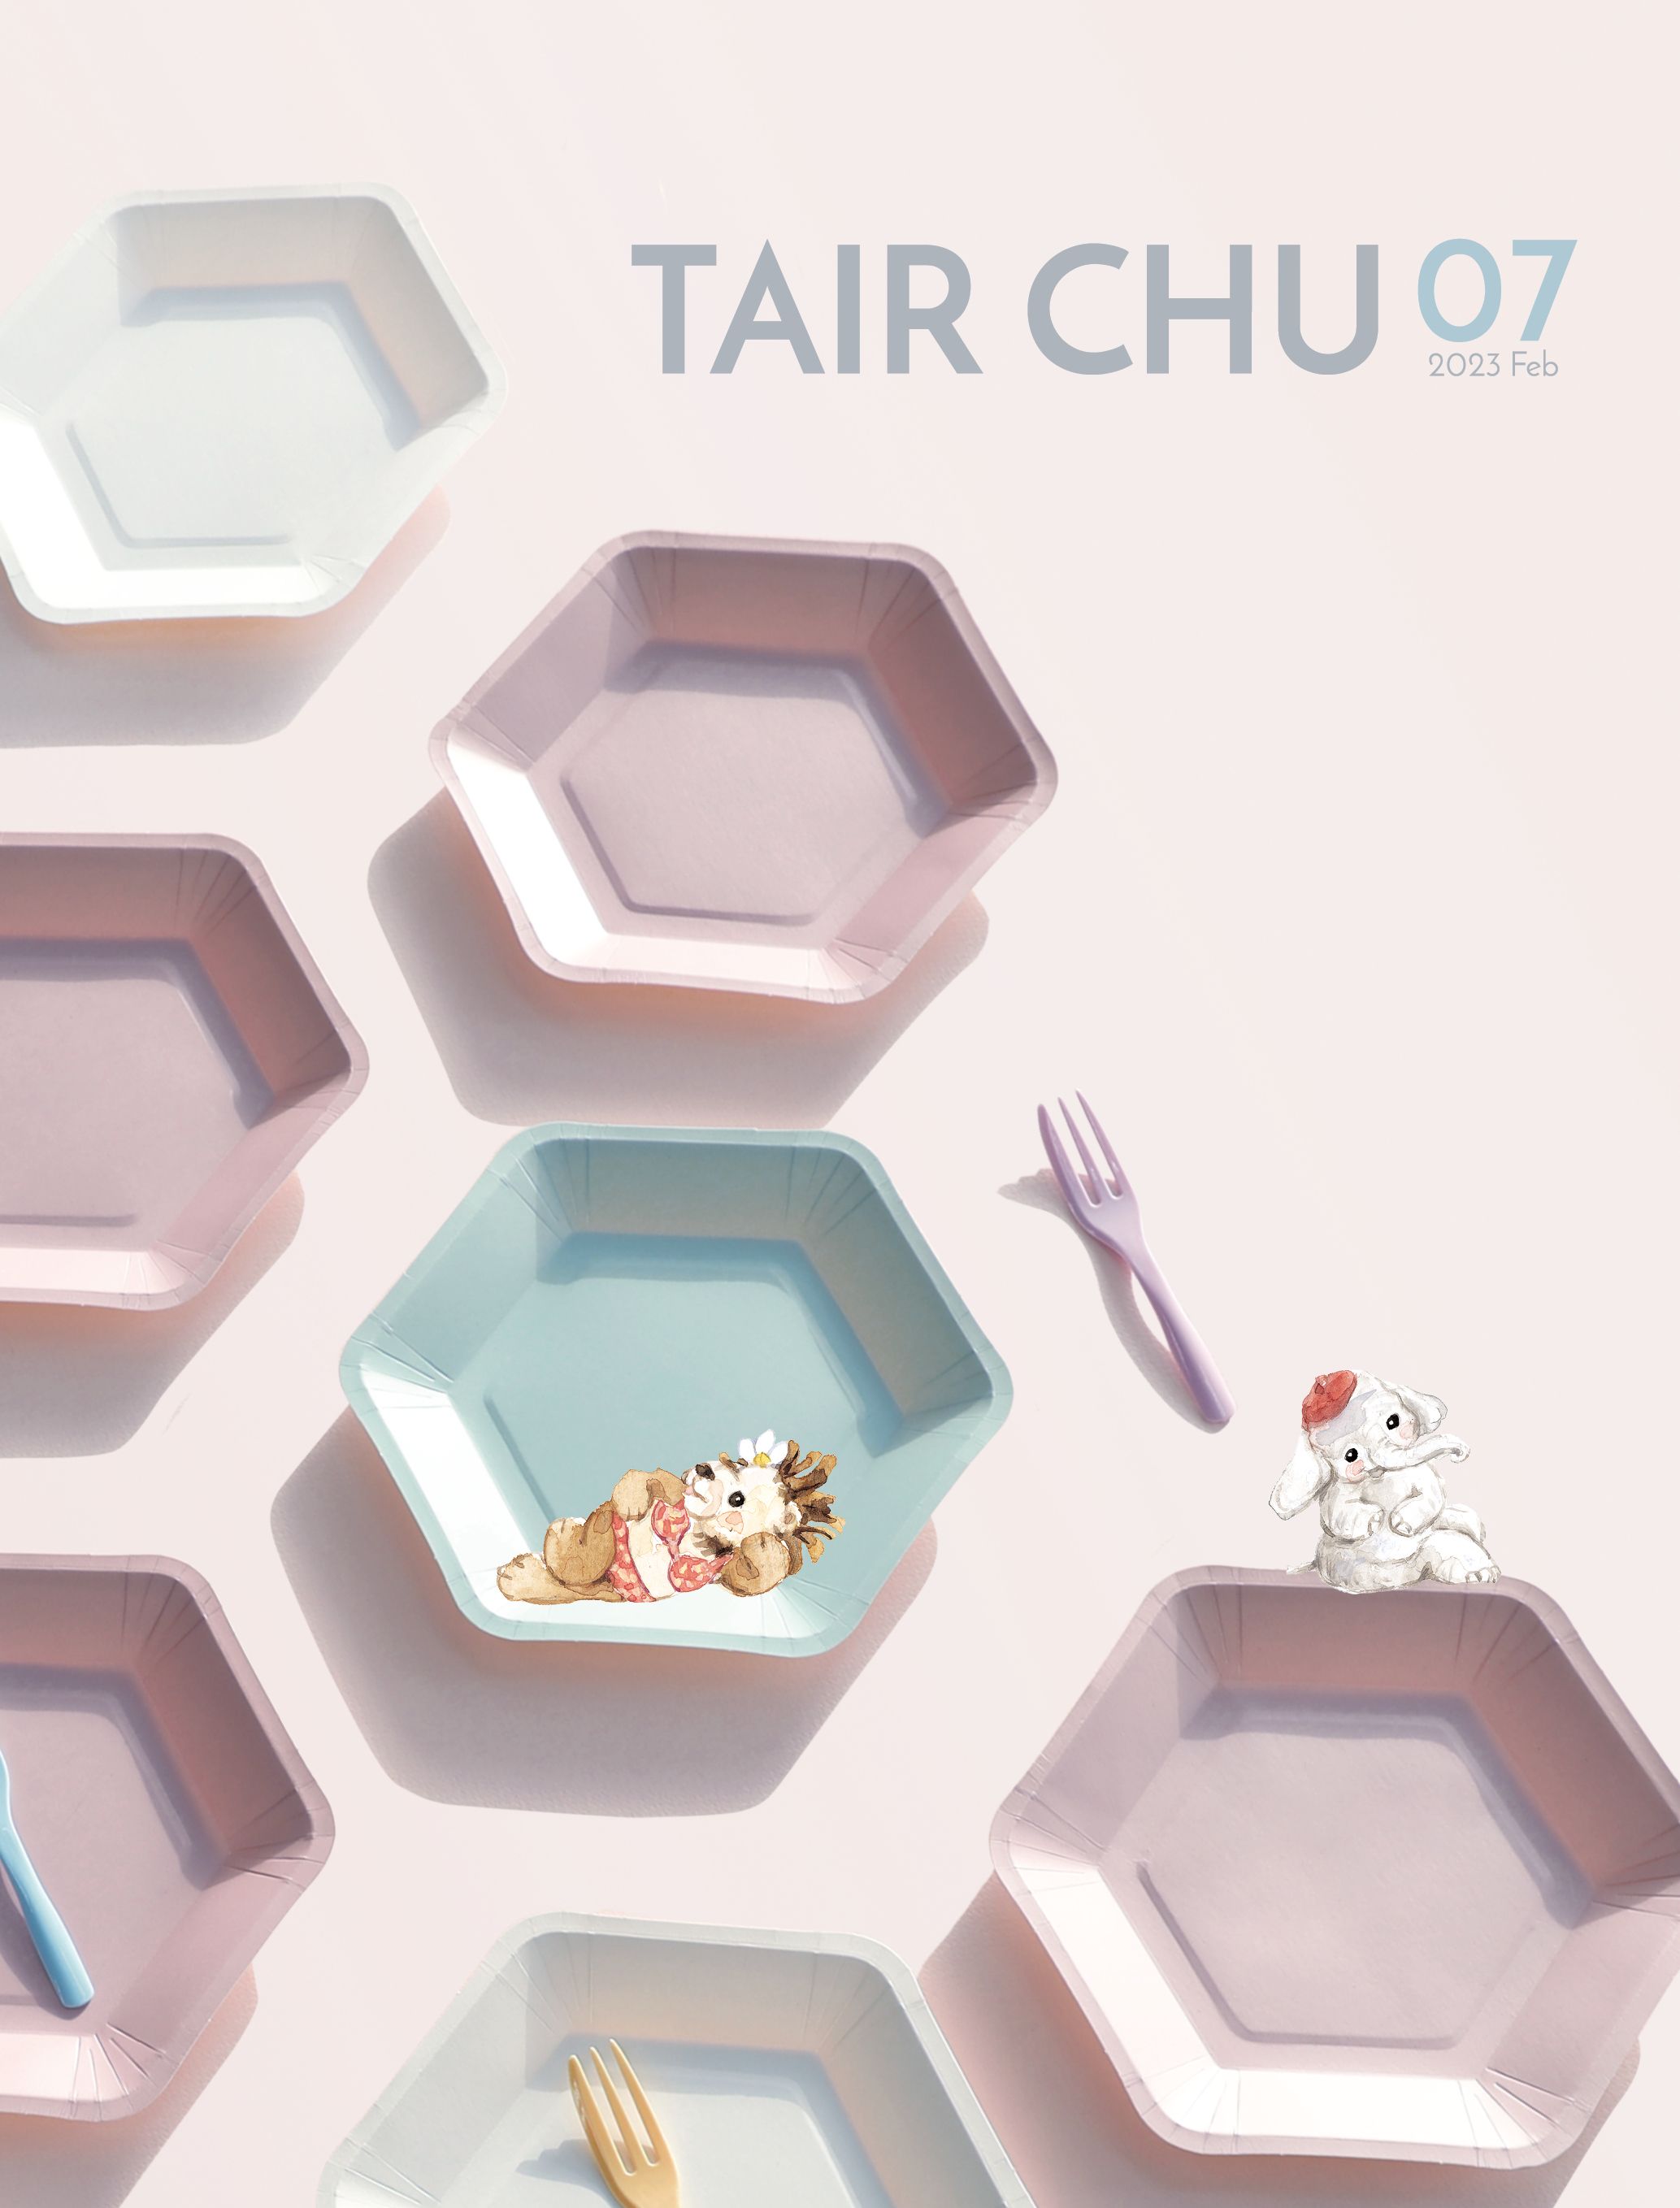 Catálogo de Talheres e Utensílios de Mesa Biodegradáveis da Festa Tair Chu de 2023